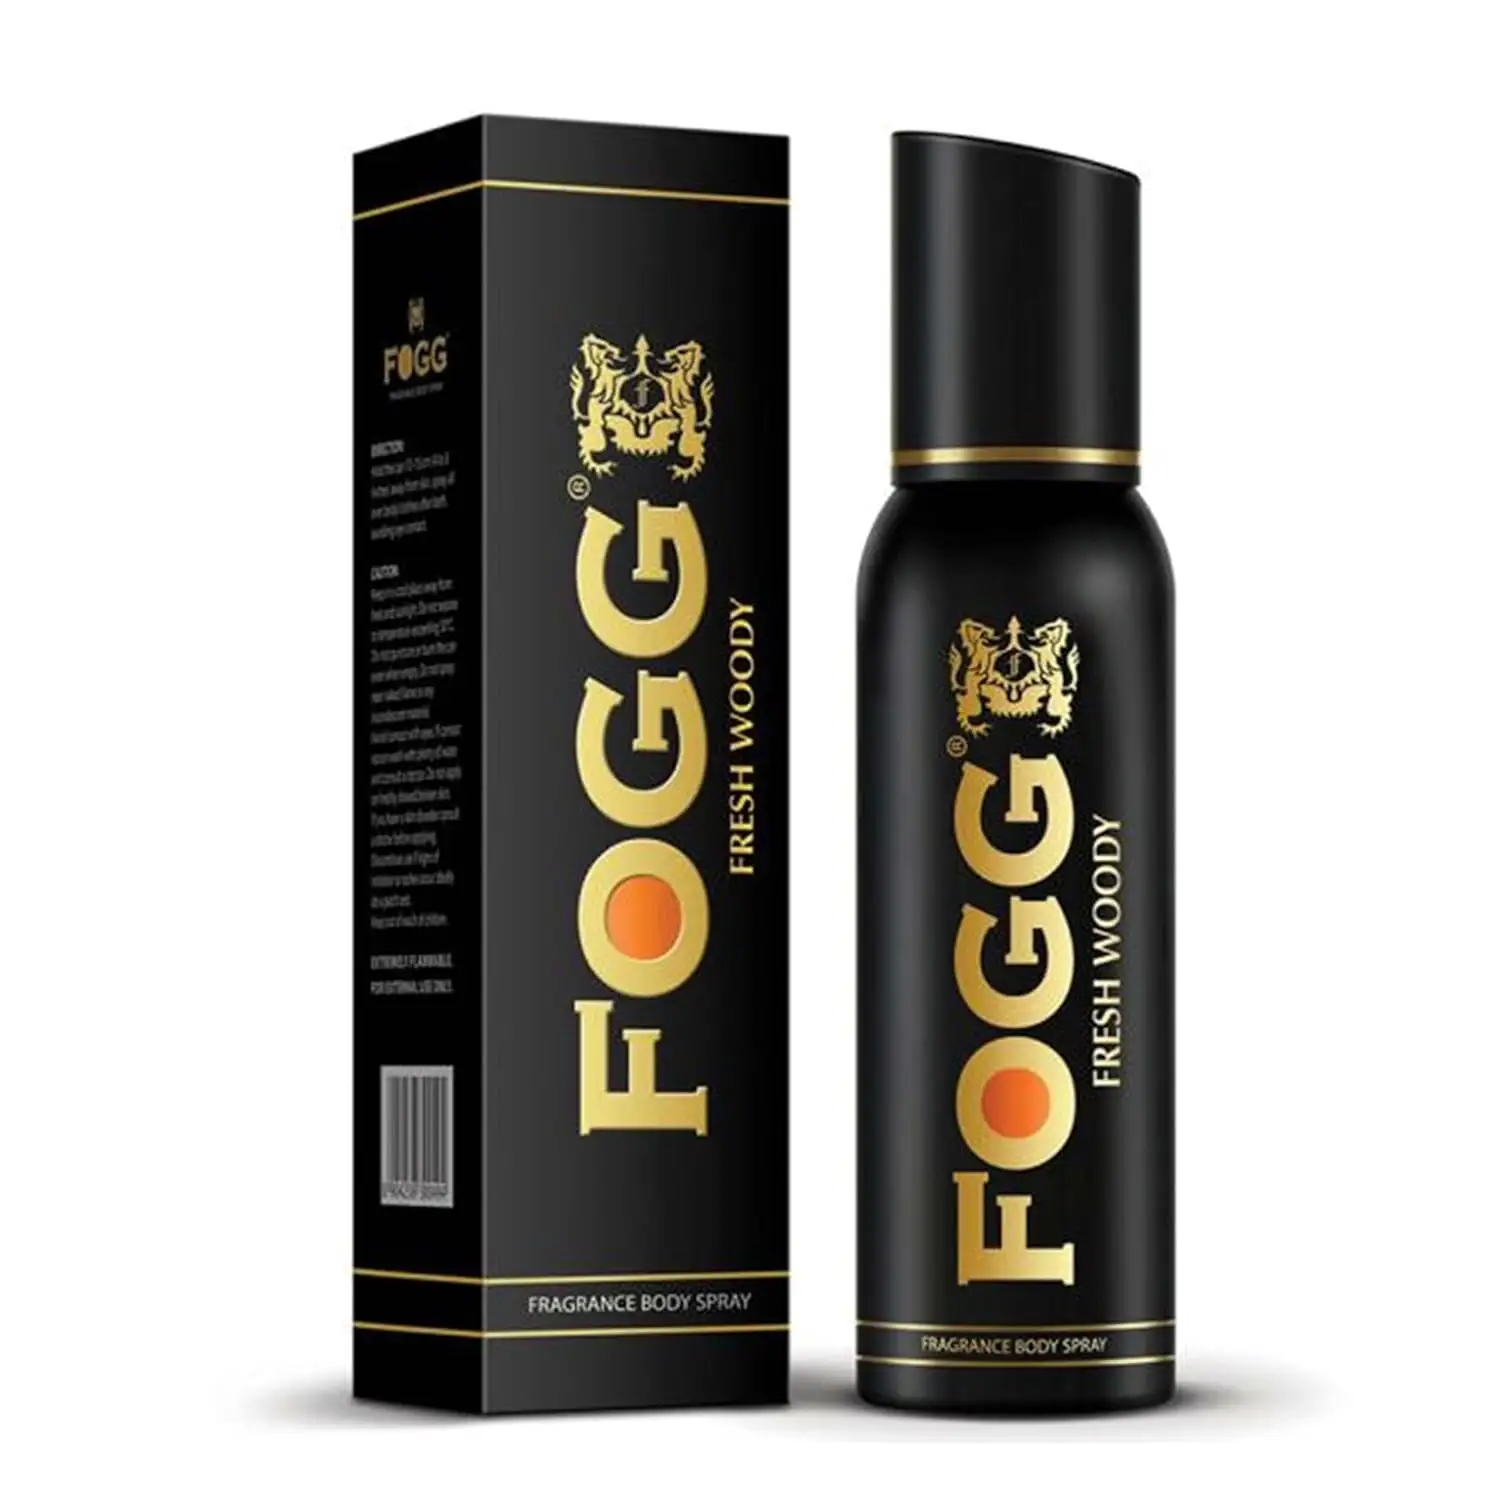 Vente chaude déodorant vaporisateur longue durée Fogg Fresh Woody 120 ml parfum frais et puissant spray pour le corps pour hommes